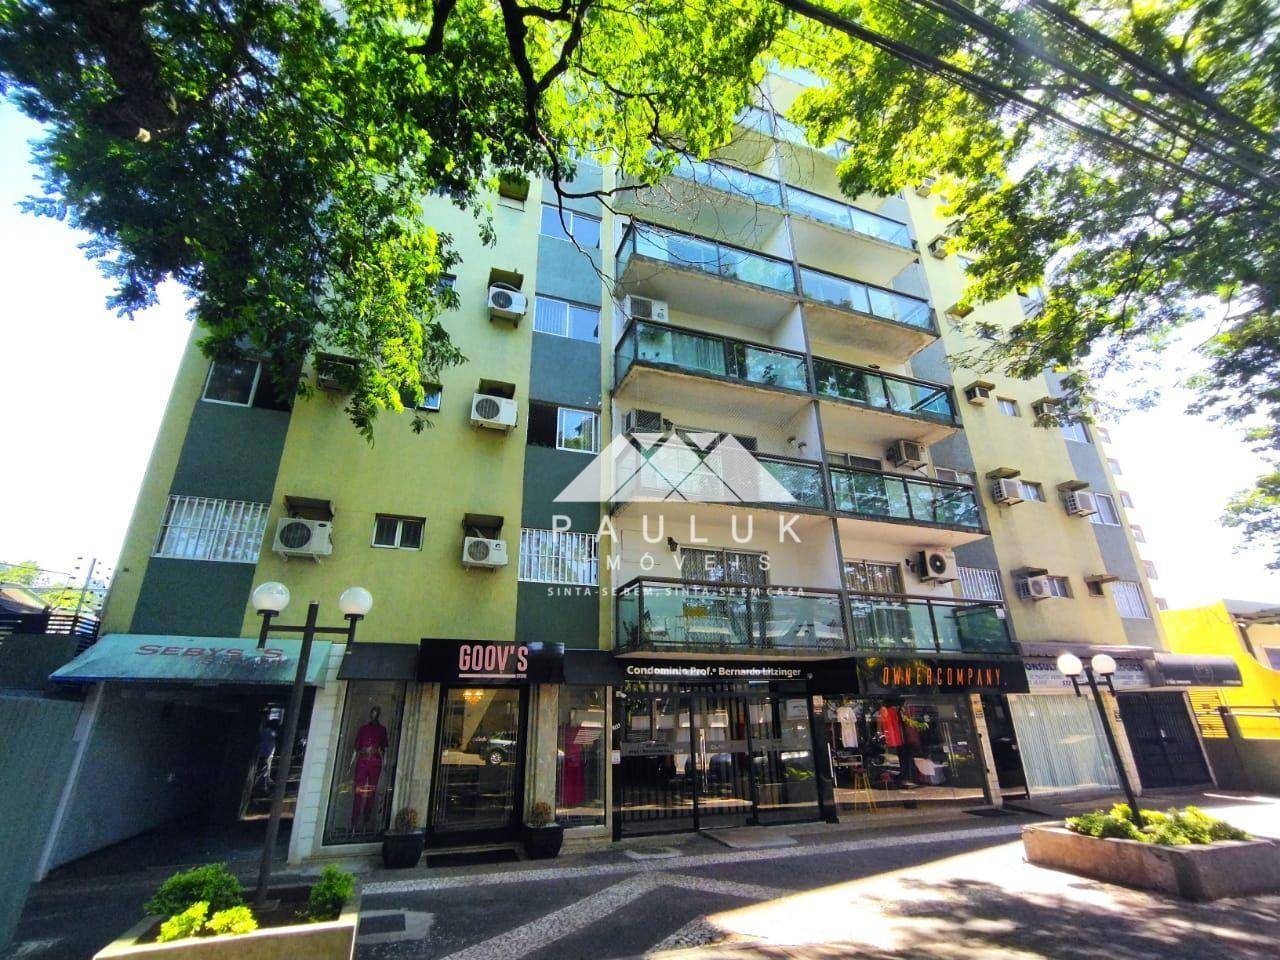 Apartamento com 3 Dormitórios Sendo 1 Suíte à venda Por R$ 460.000 - Edificio Professor Bernardo Lit | PAULUK IMÓVEIS | Portal OBusca